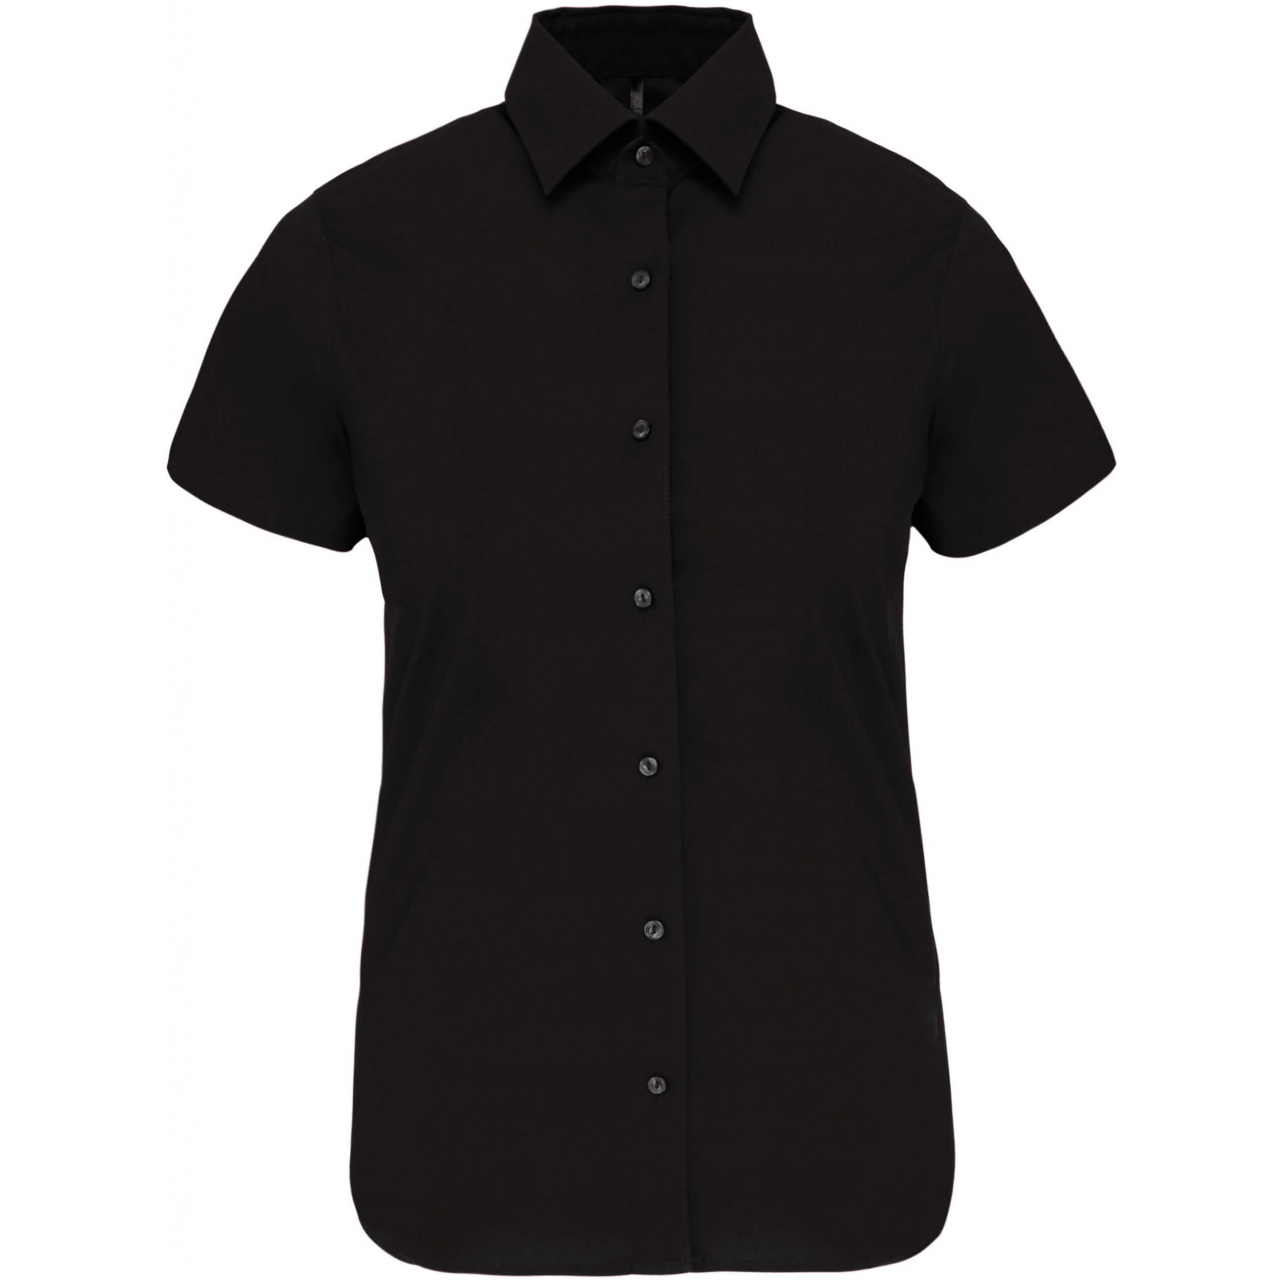 Košile dámská s krátkým rukávem Kariban strečová - černá, XL